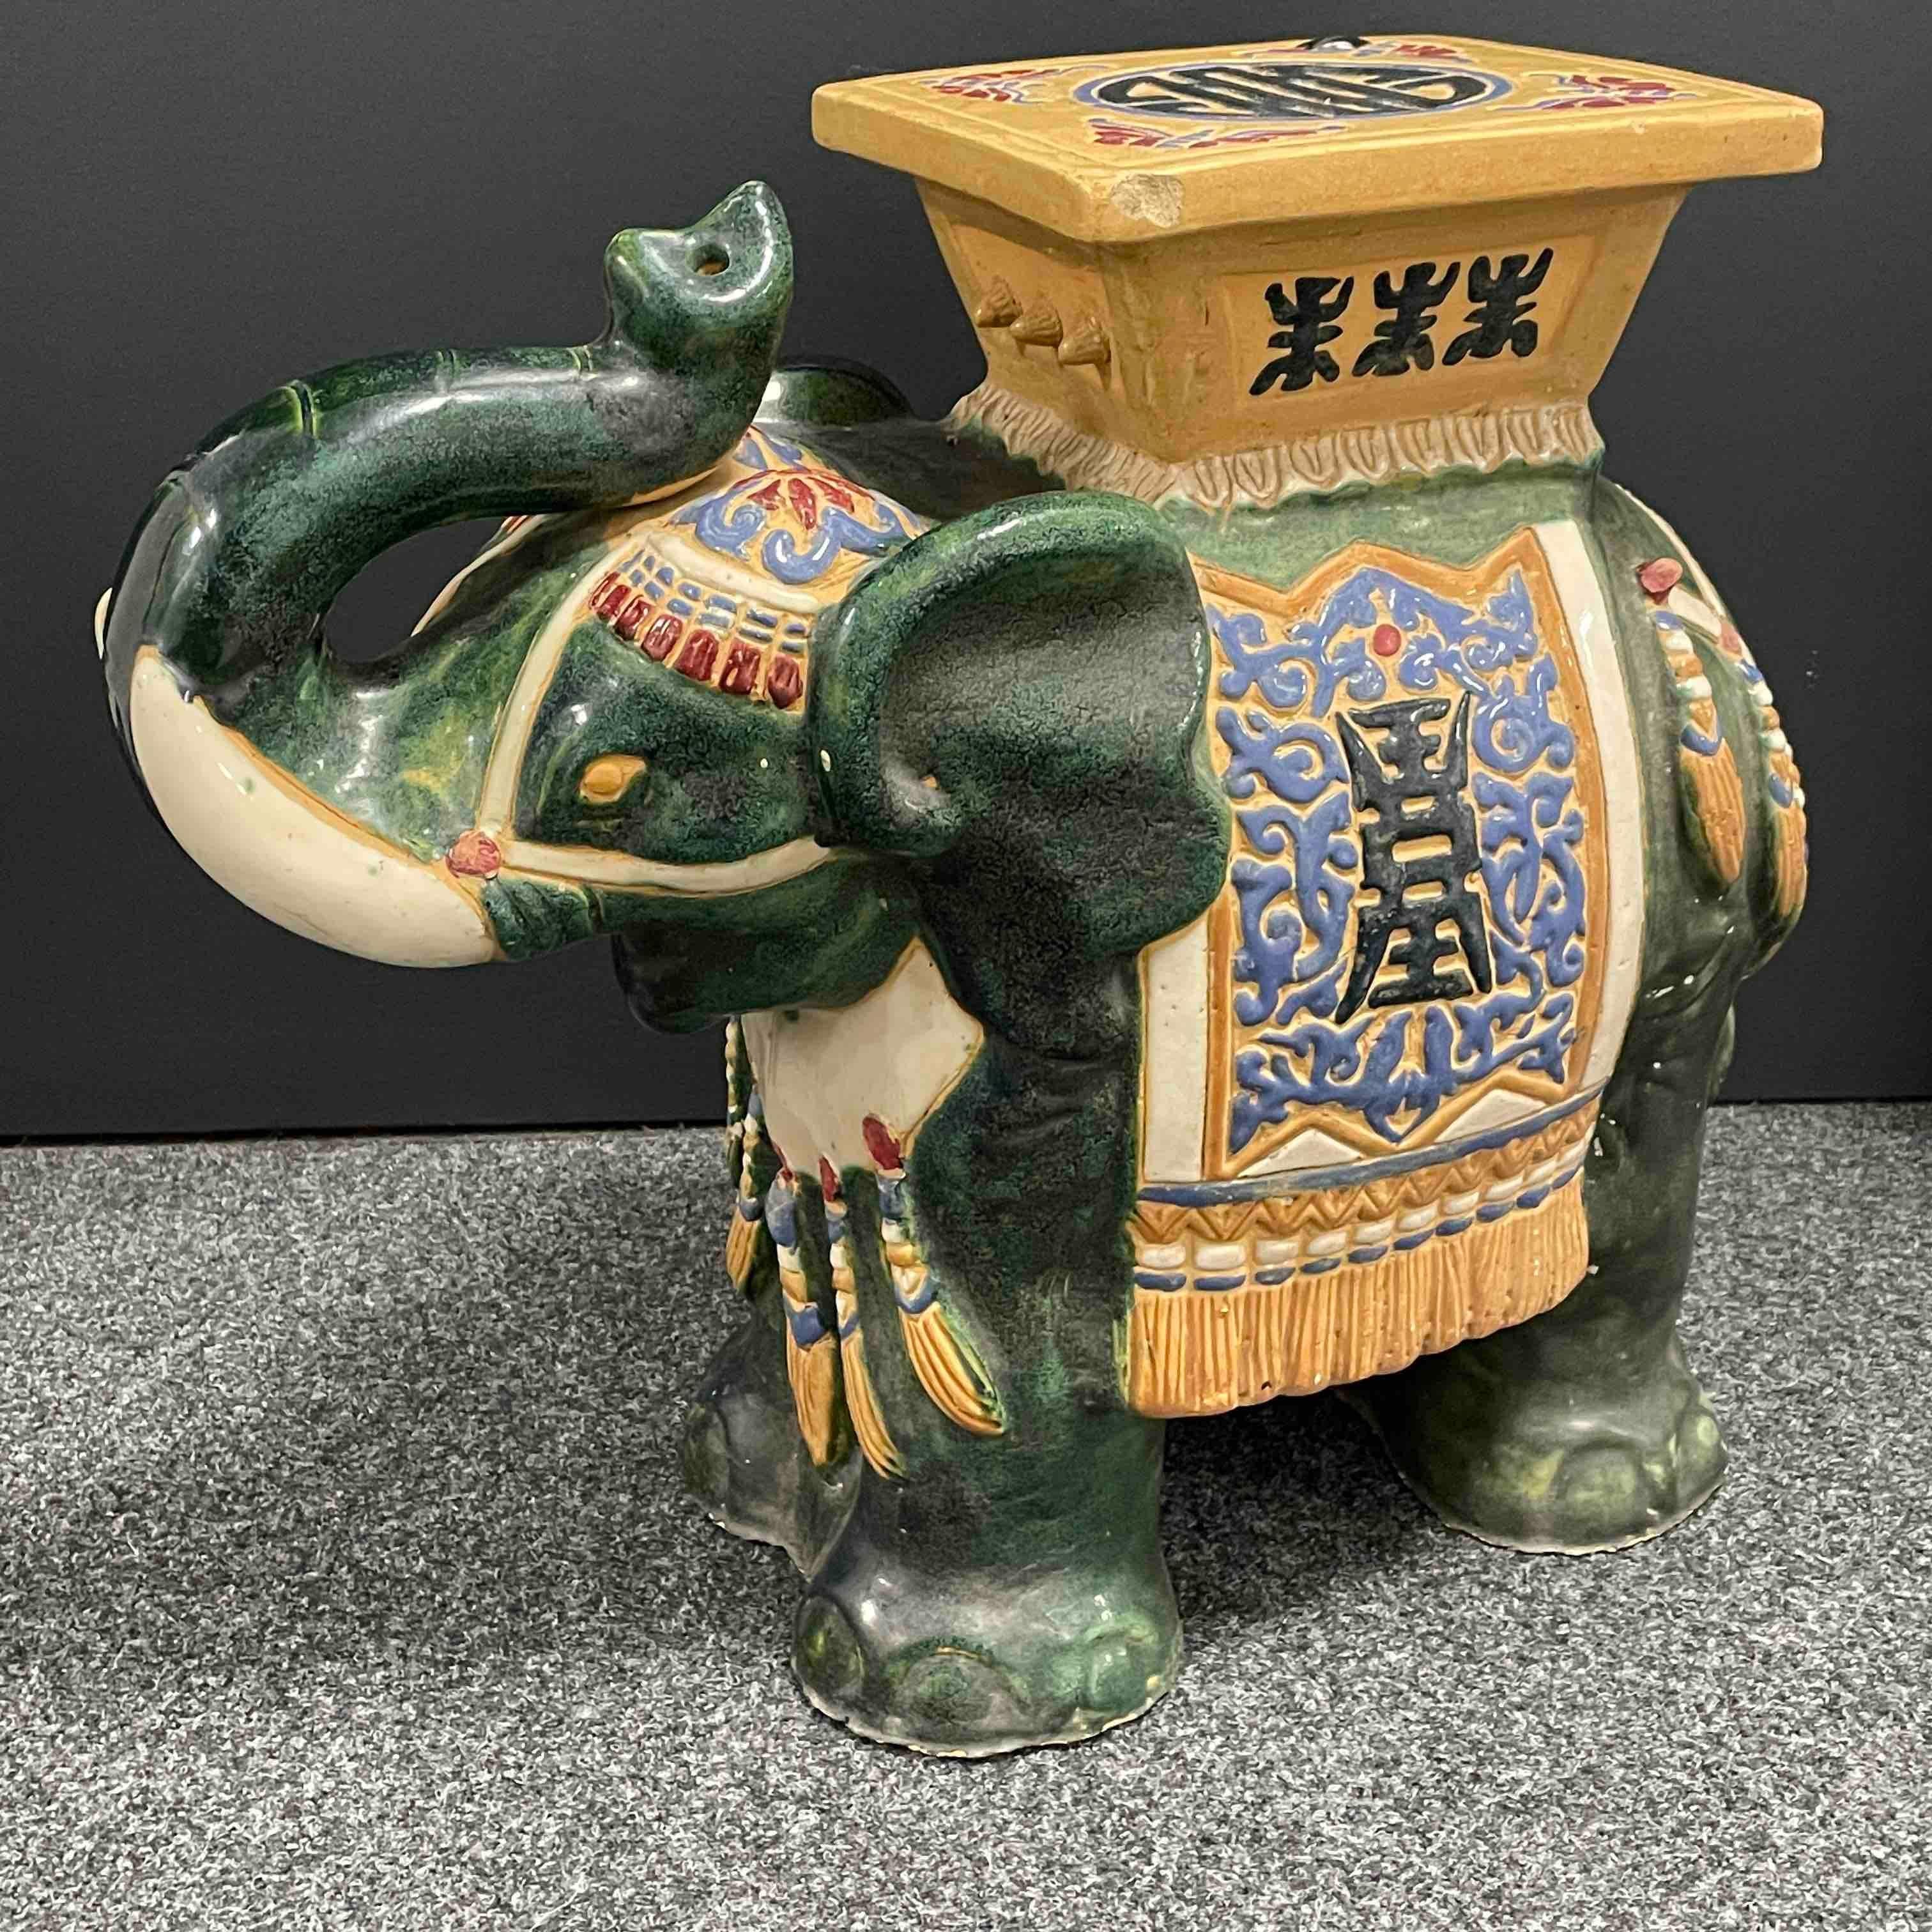 Mitte des 20. Jahrhunderts glasierter Keramik-Elefanten-Gartenhocker, Blumentopfsitz oder Beistelltisch. Handgefertigt aus Keramik. Eine schöne Ergänzung für Ihr Haus, Ihre Terrasse oder Ihren Garten. Eine schöne Ergänzung für jedes Zimmer, jede